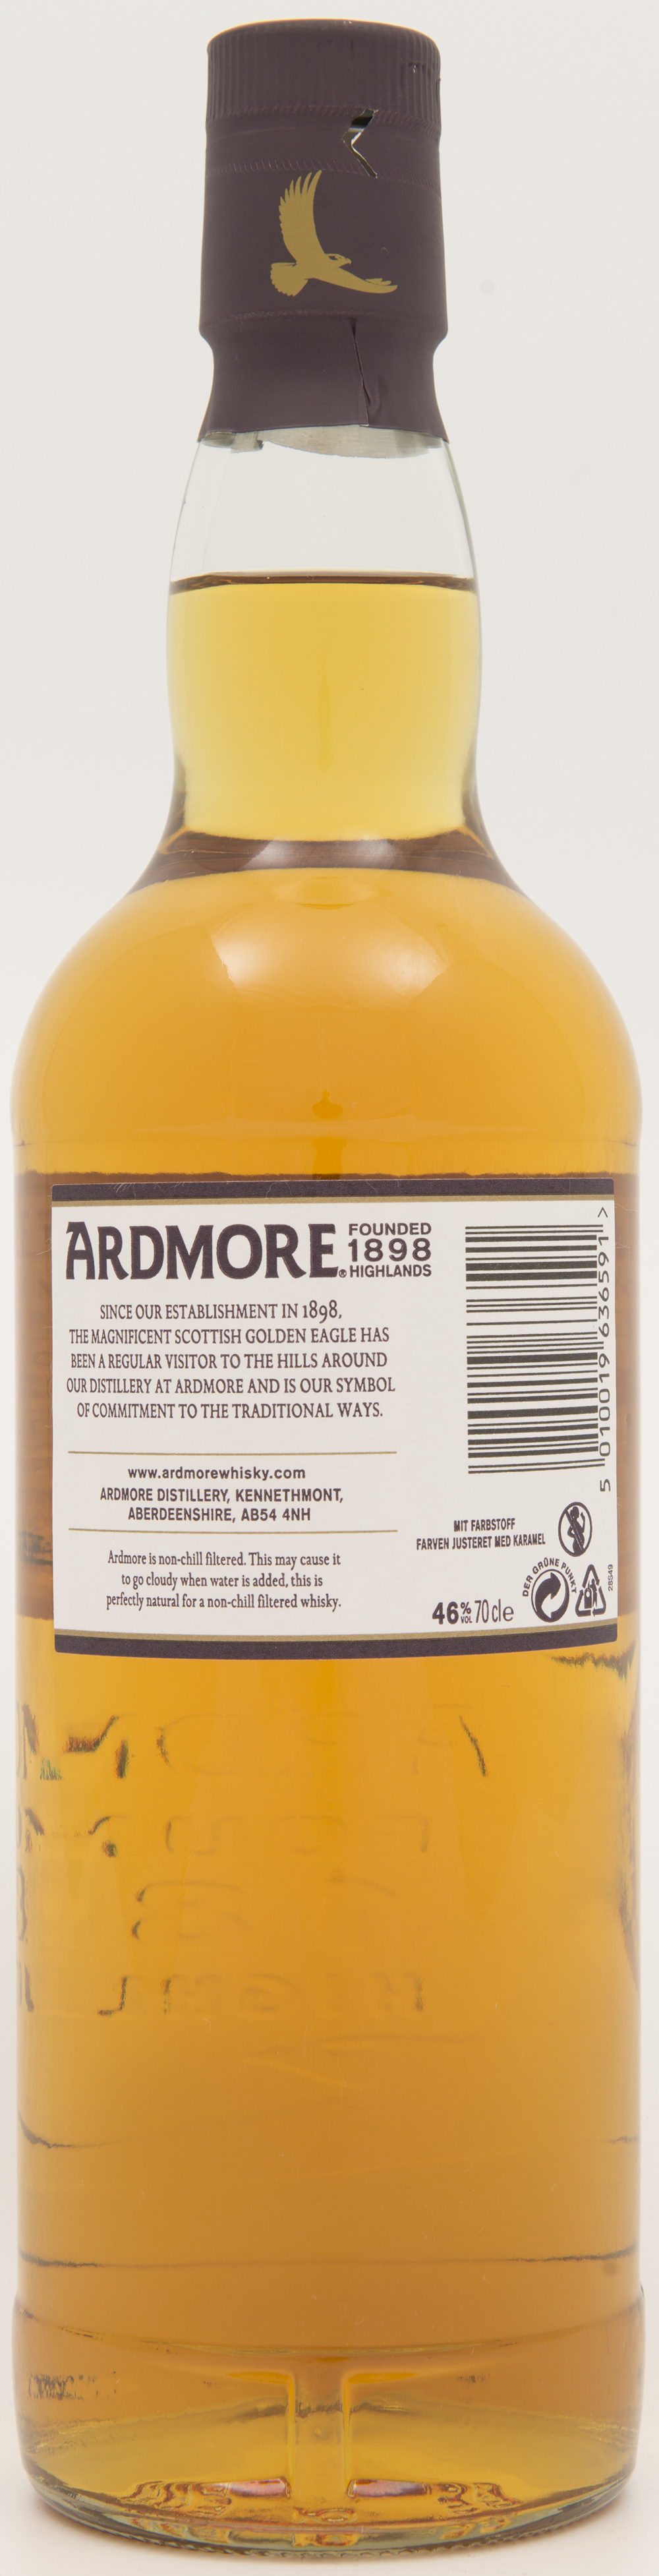 Billede: DSC_4843 Ardmore Traditional Cask - bottle back.jpg